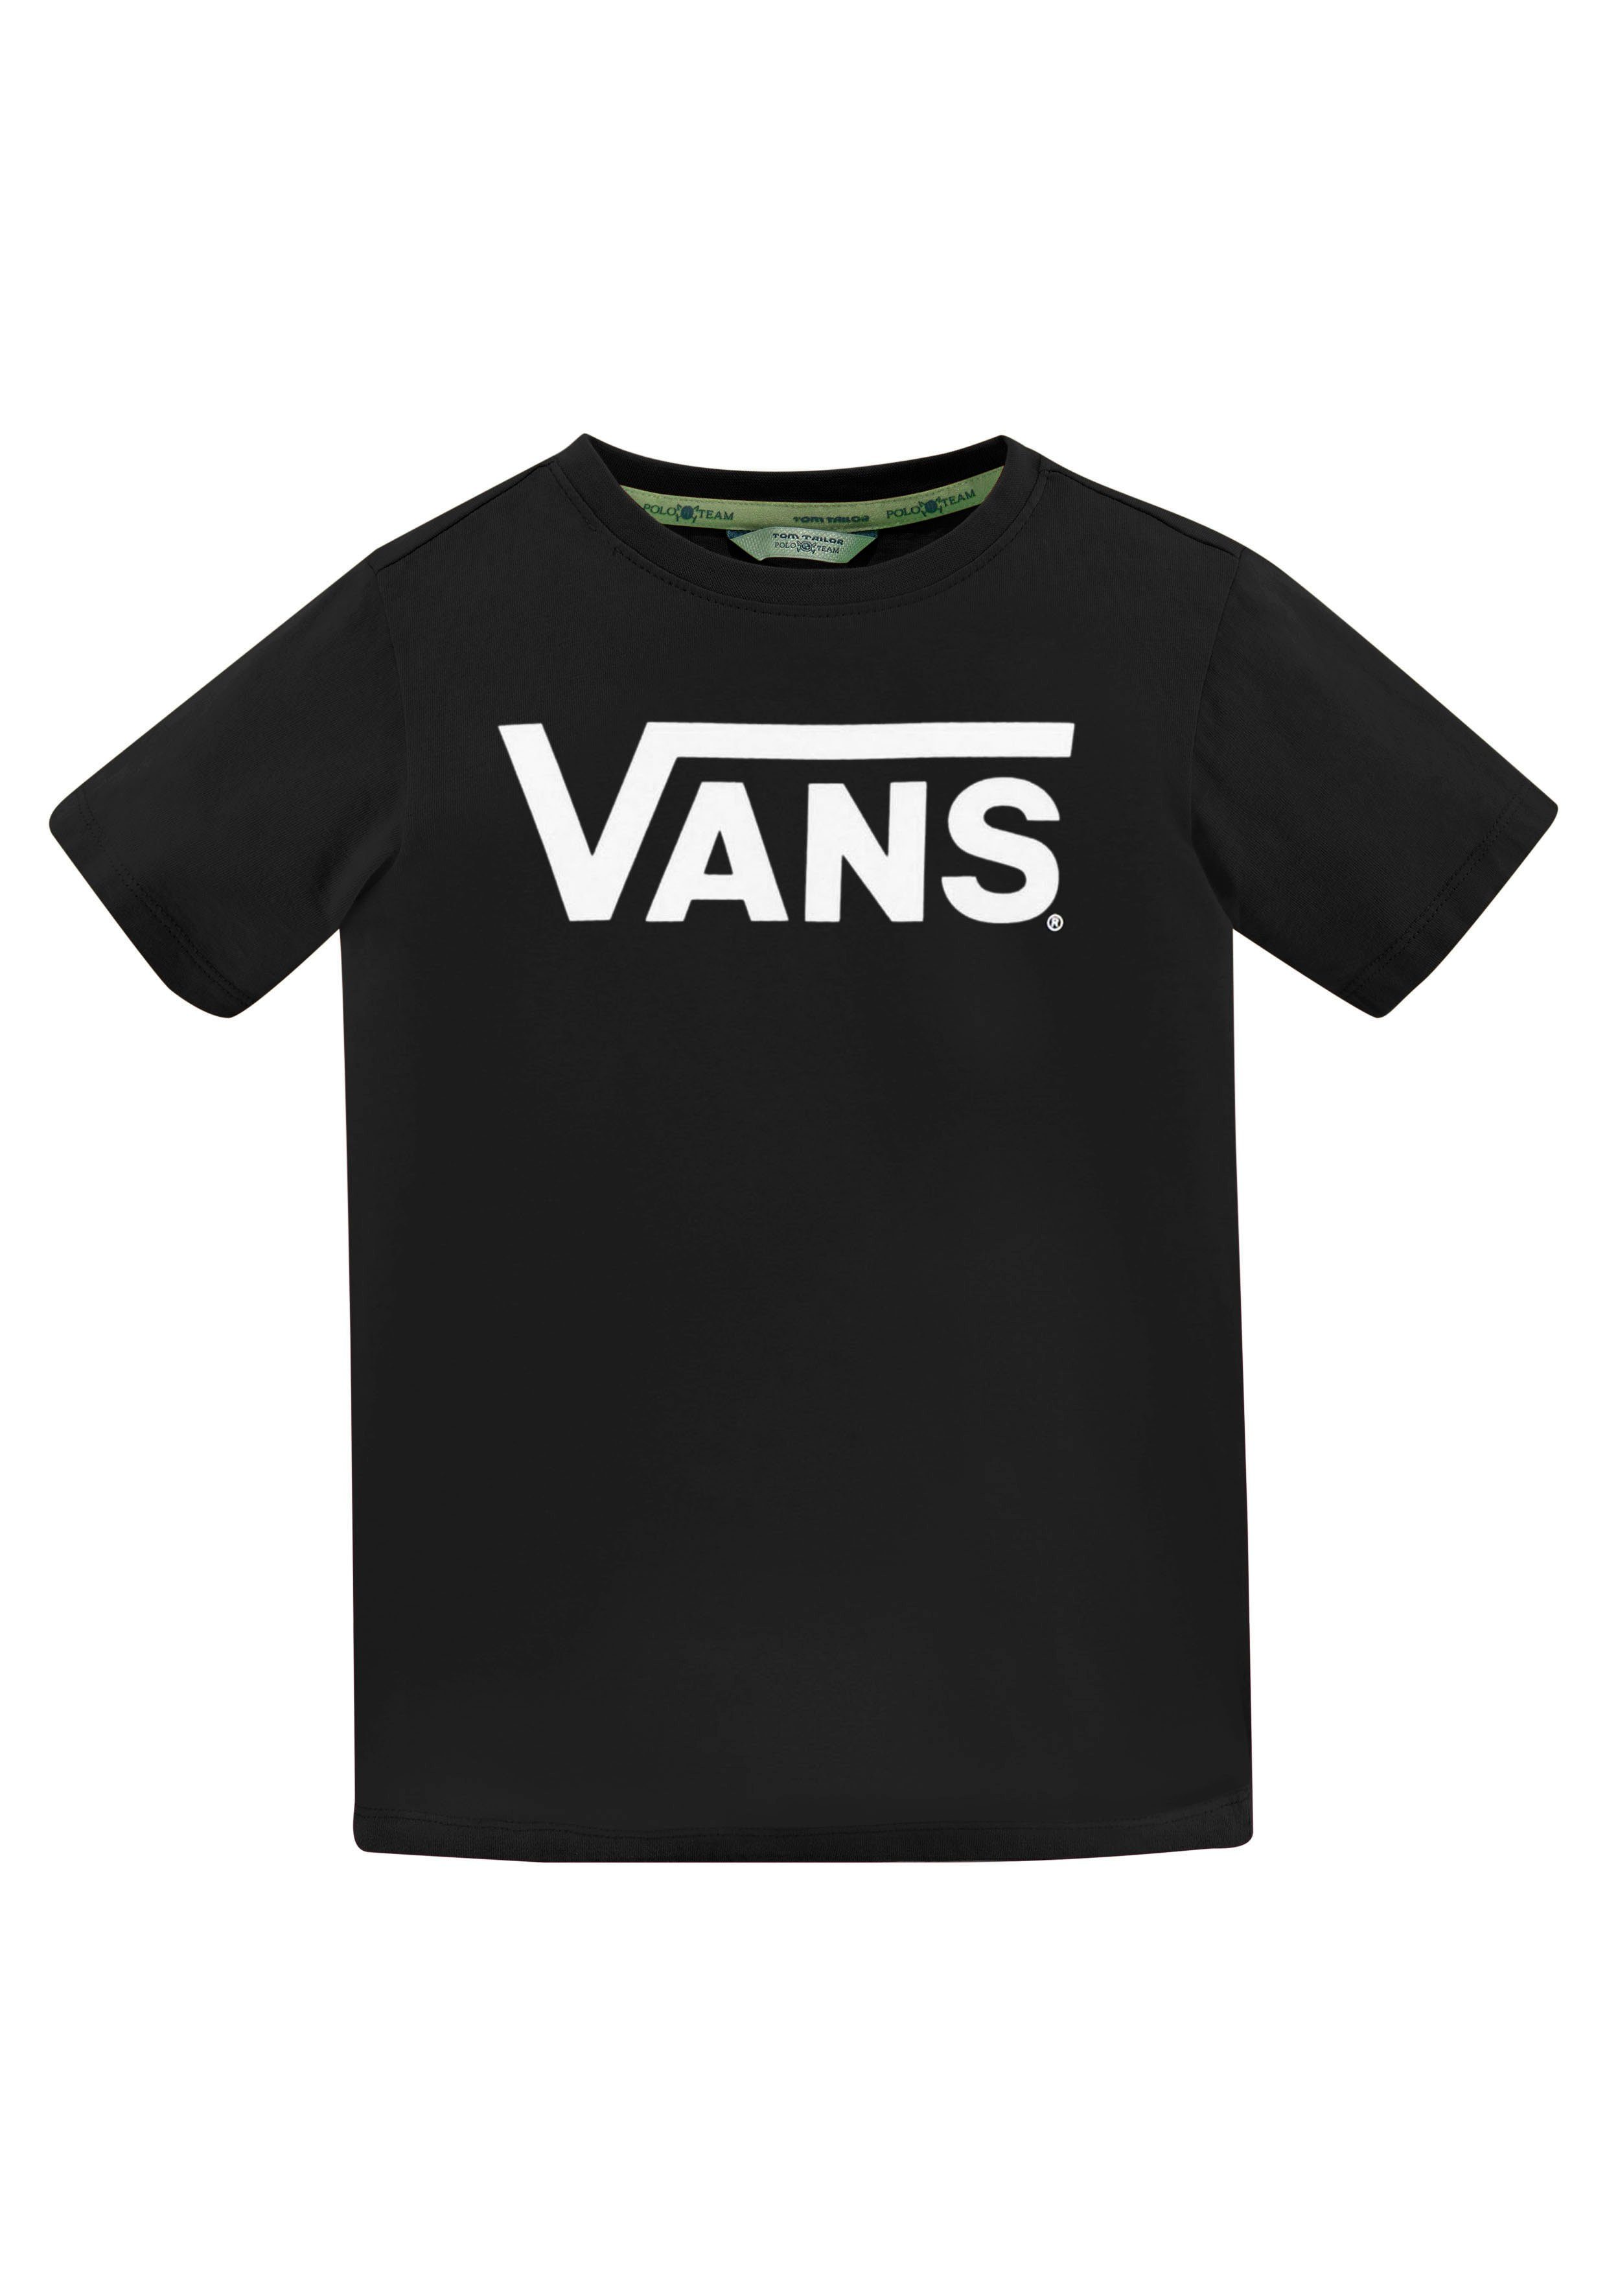 Vans T-Shirt KIDS schwarz VANS CLASSIC